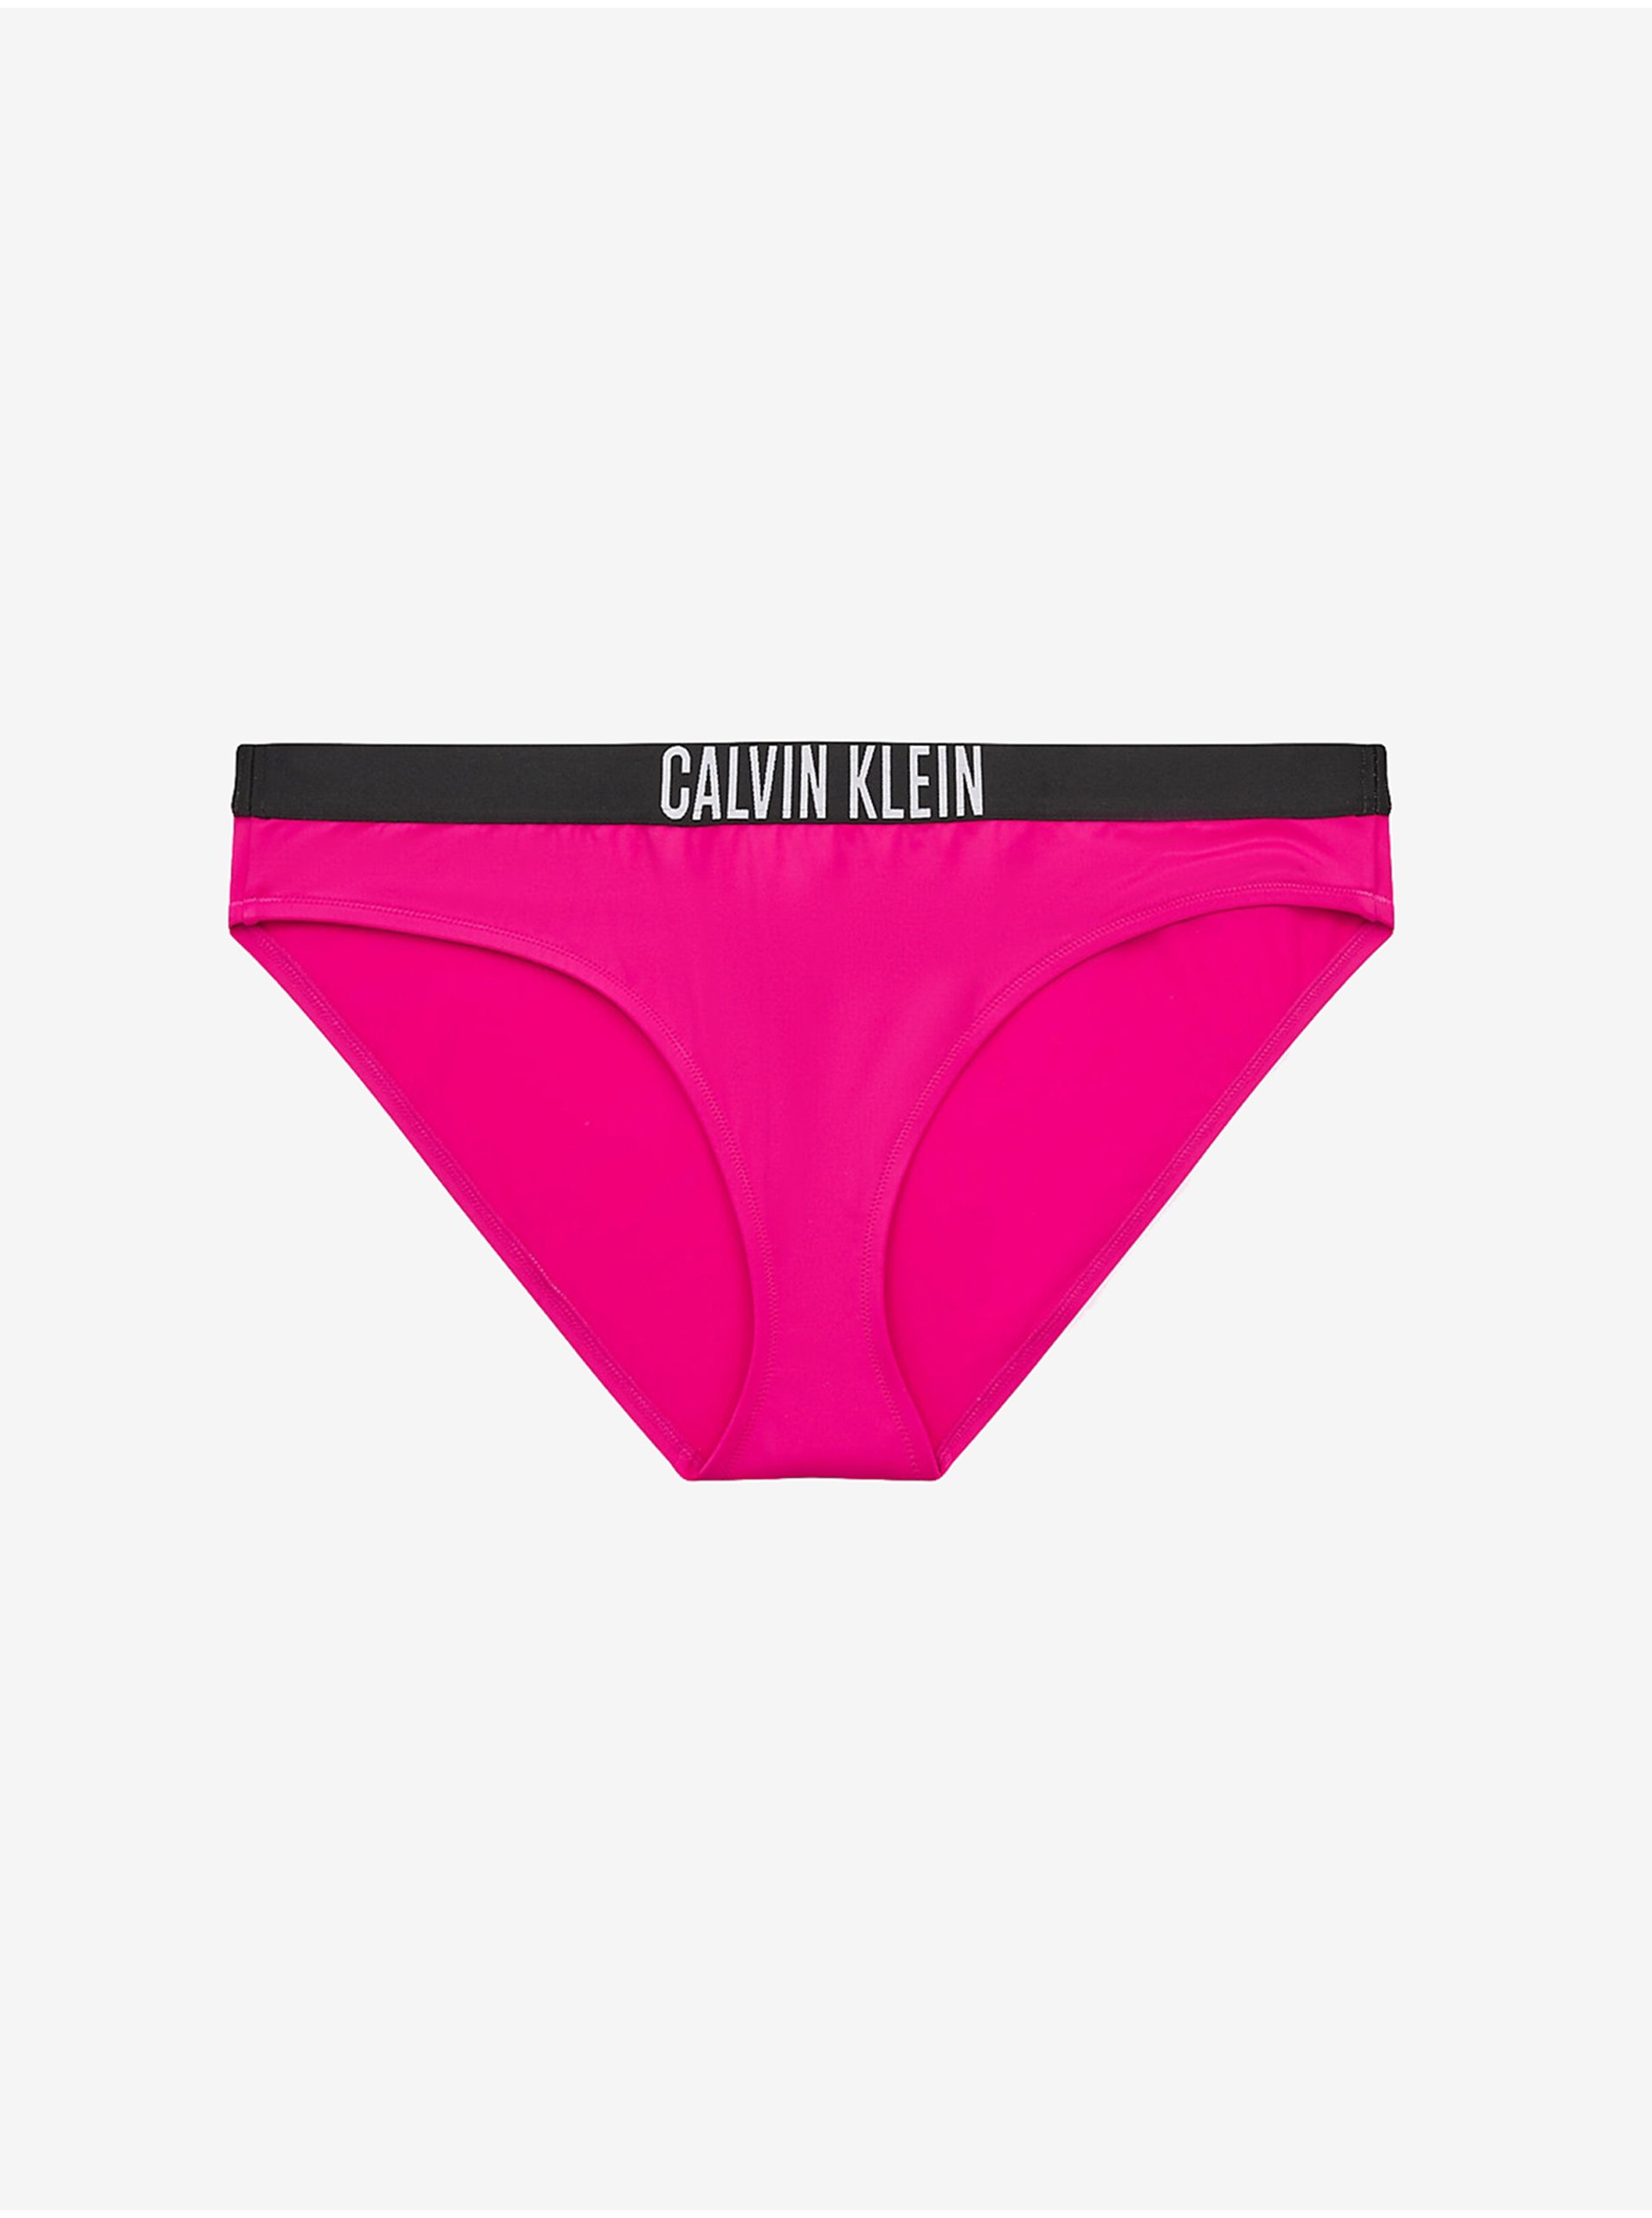 Lacno Tmavoružový dámsky spodný diel plaviek Calvin Klein Underwear